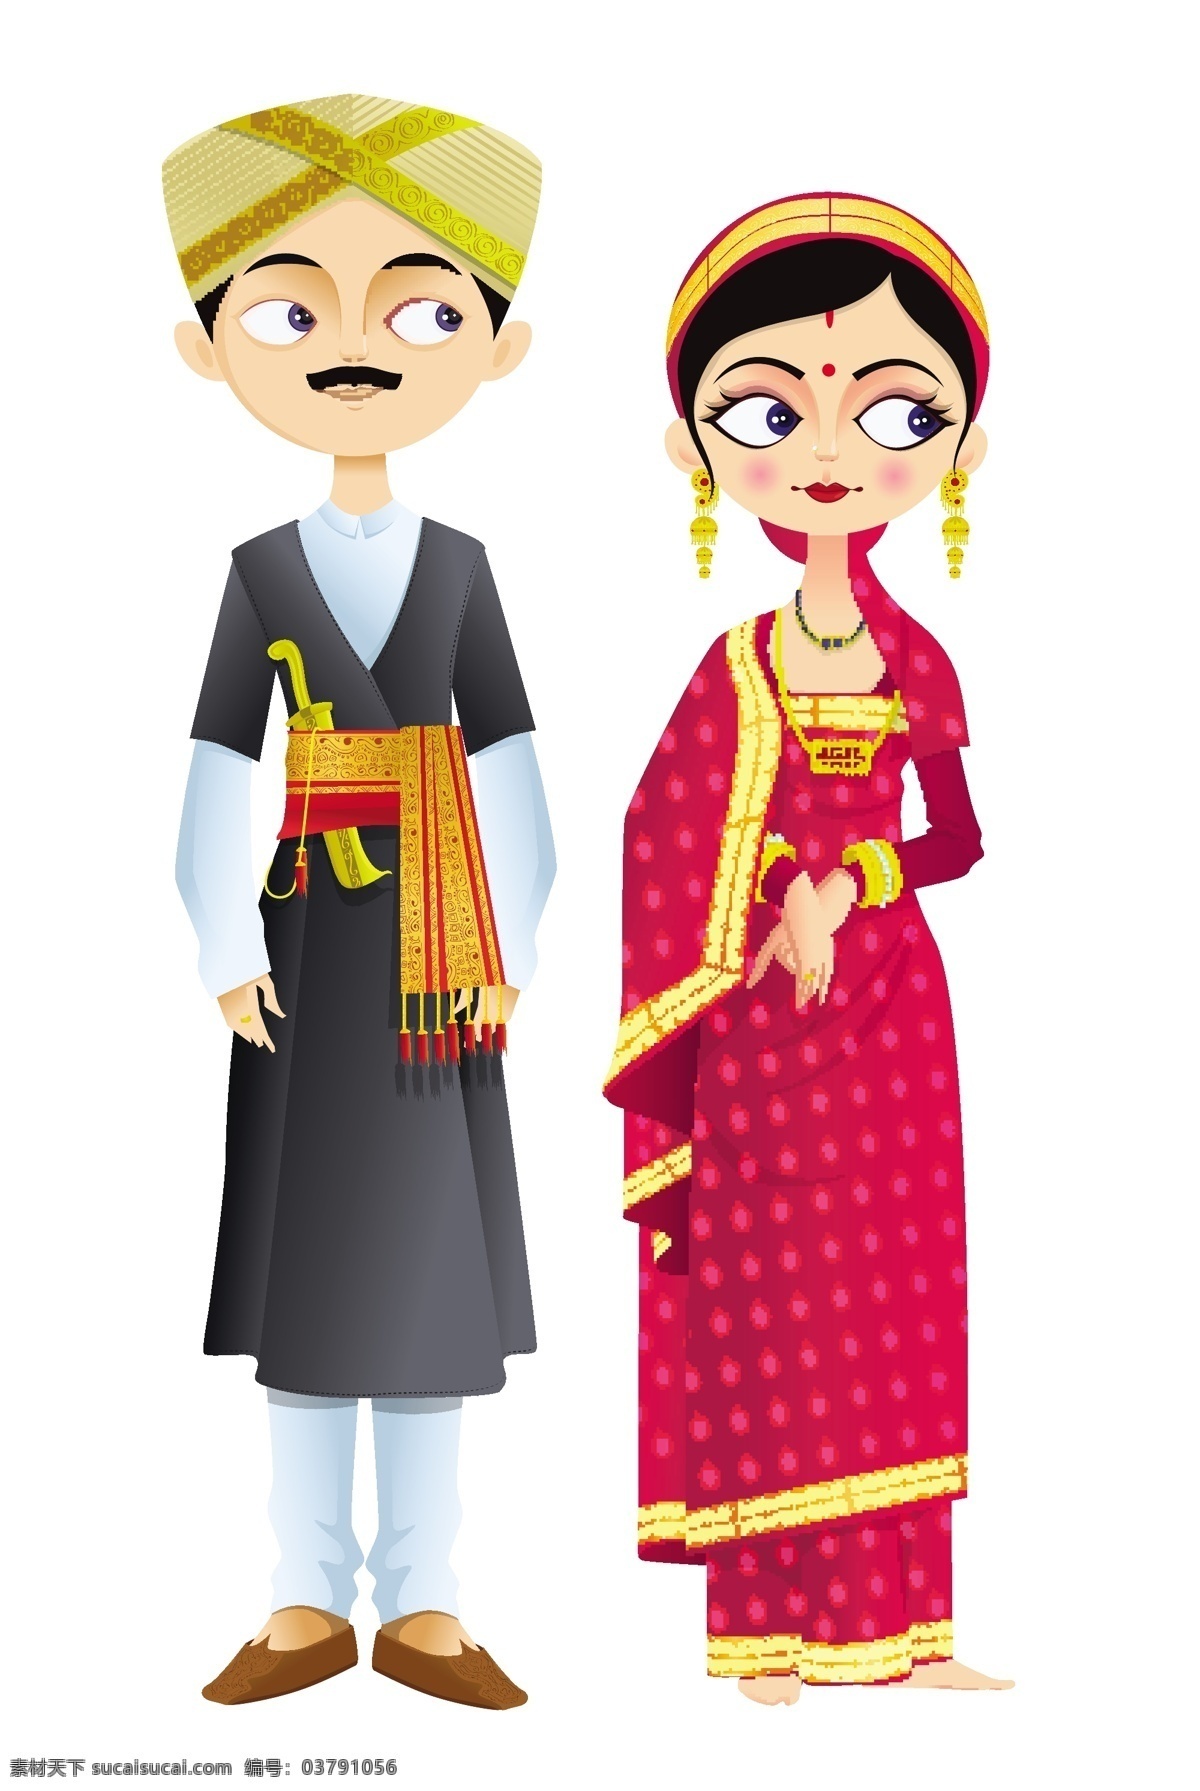 亚洲 传统 婚礼 服饰 婚庆 婚礼服饰 亚洲传统服饰 新人图片 矢量素材 白色